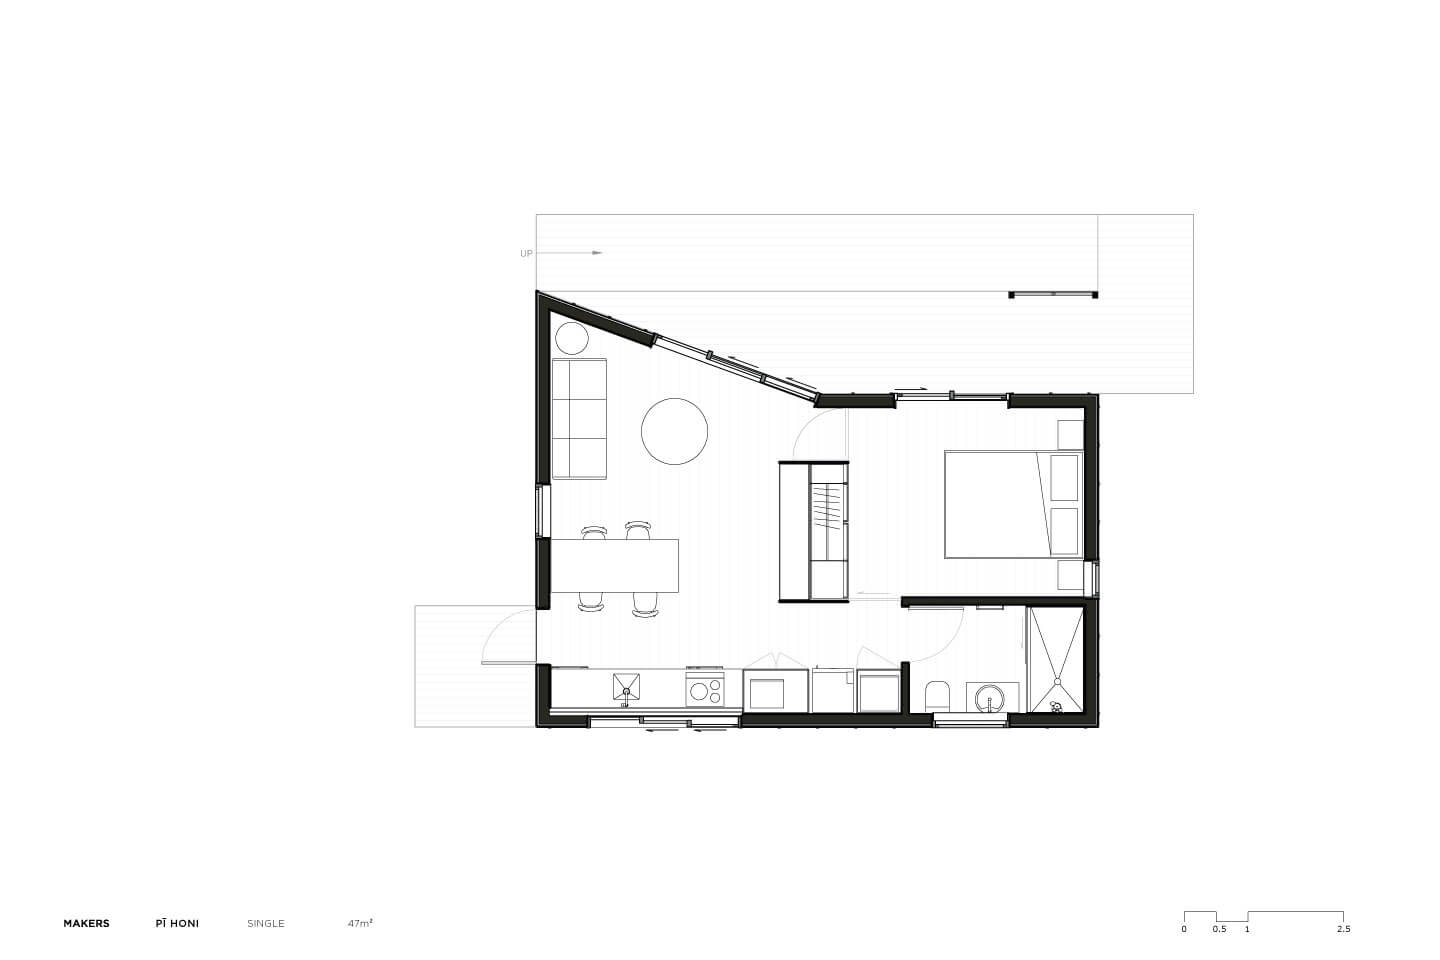 SNUG_Pi_Honi_Single_Plan_Makers-of-Architecture